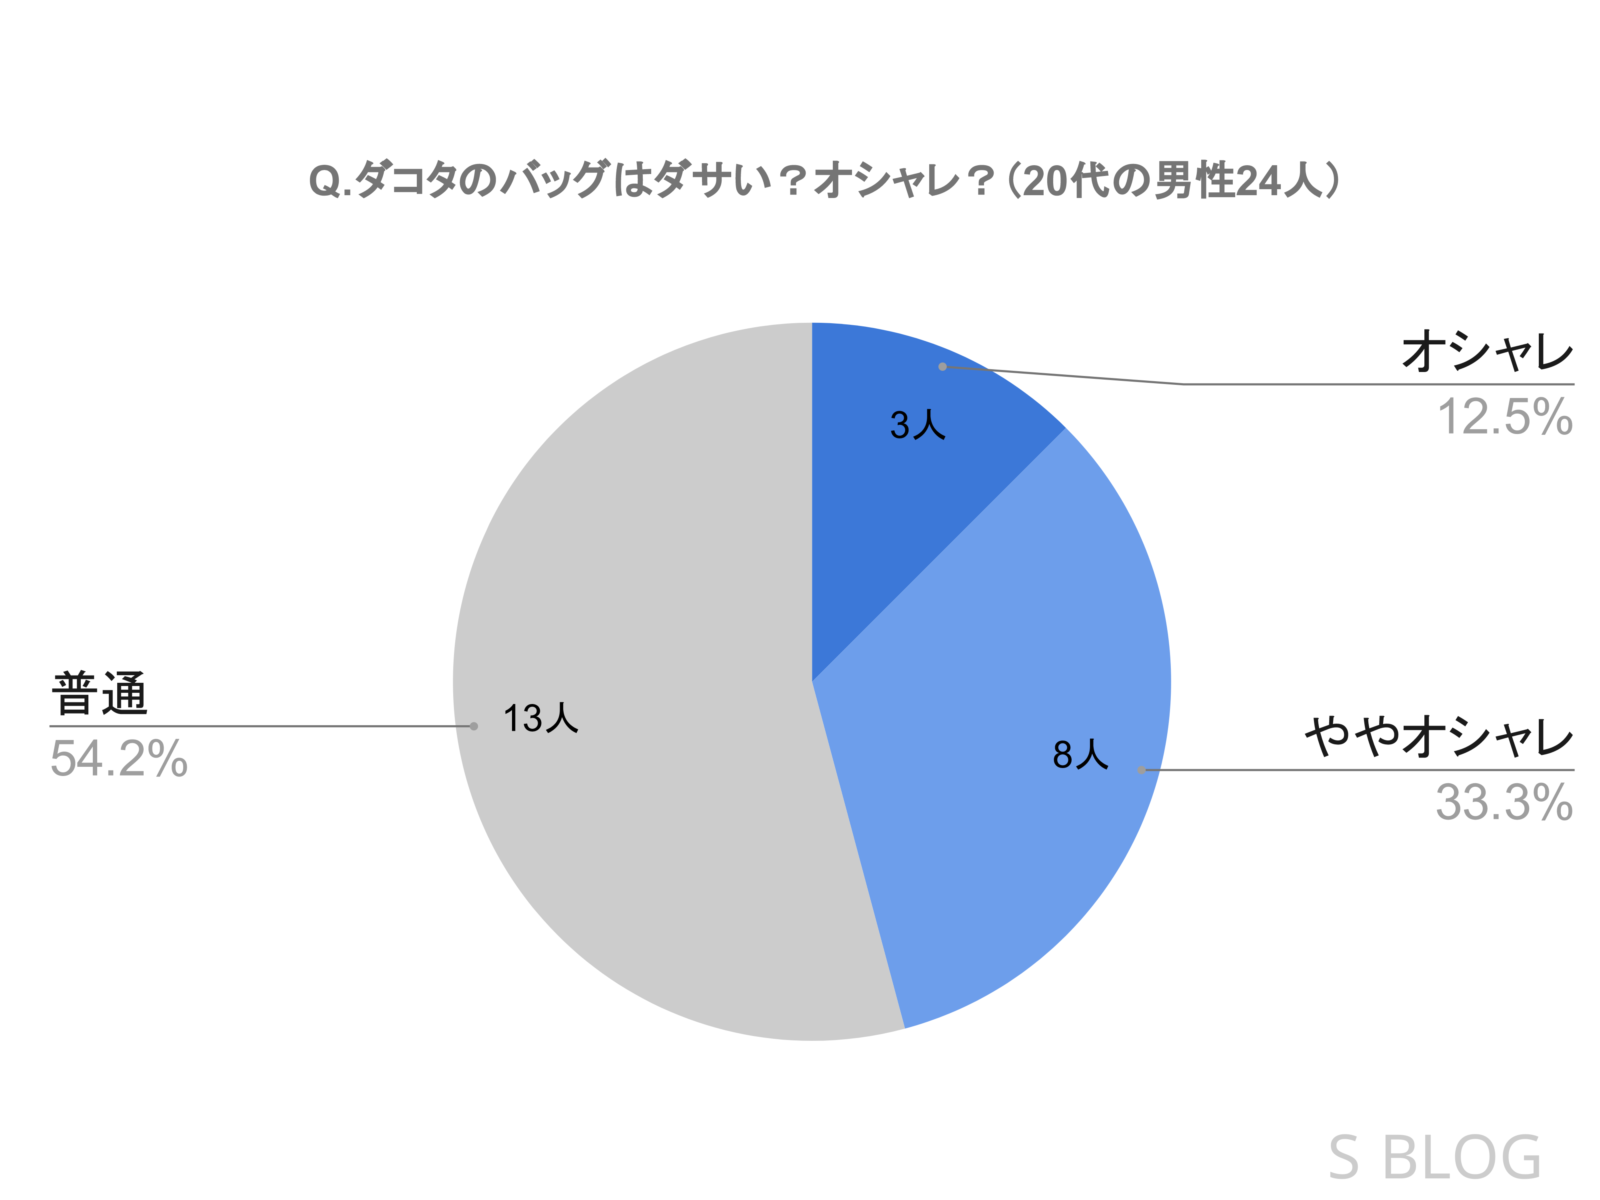 「ダコタのバッグはダサいか？それともオシャレか？」という質問に対する20代男性24人の評判を表した円グラフ